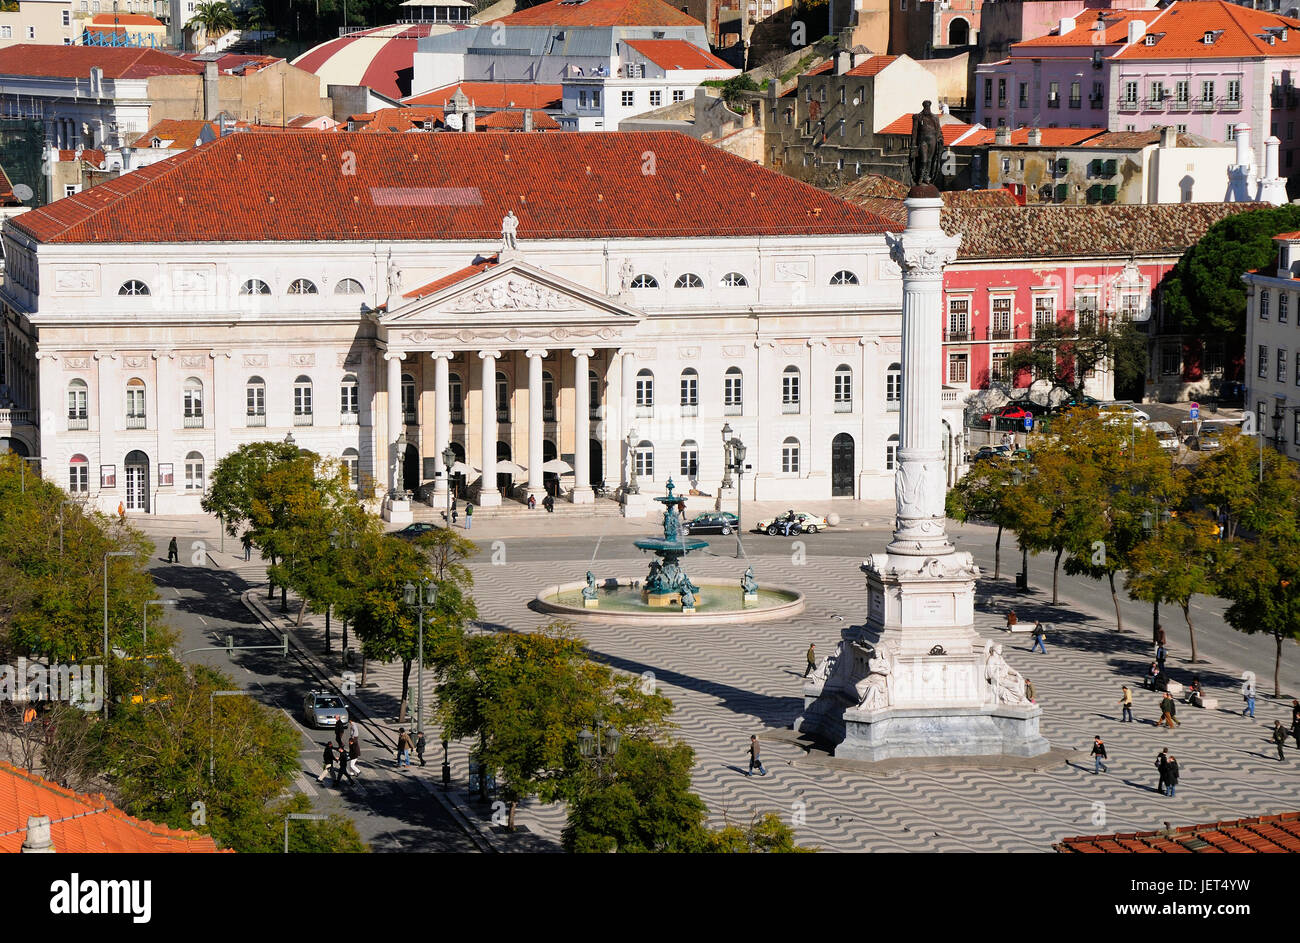 Rossio, the main square in Lisbon. Portugal Stock Photo